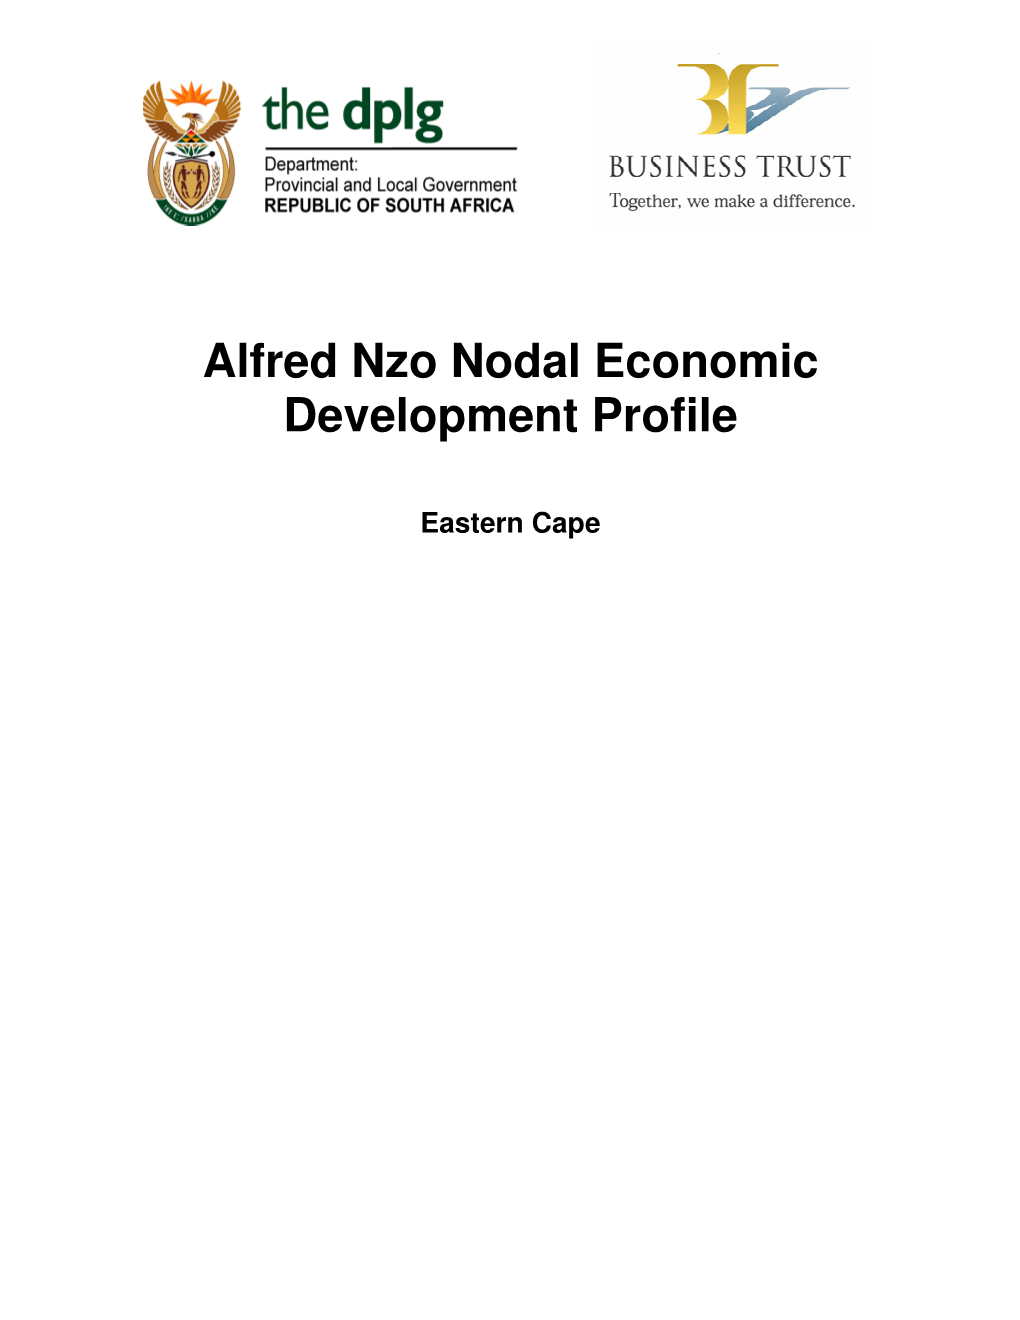 Alfred Nzo Nodal Economic Development Profile